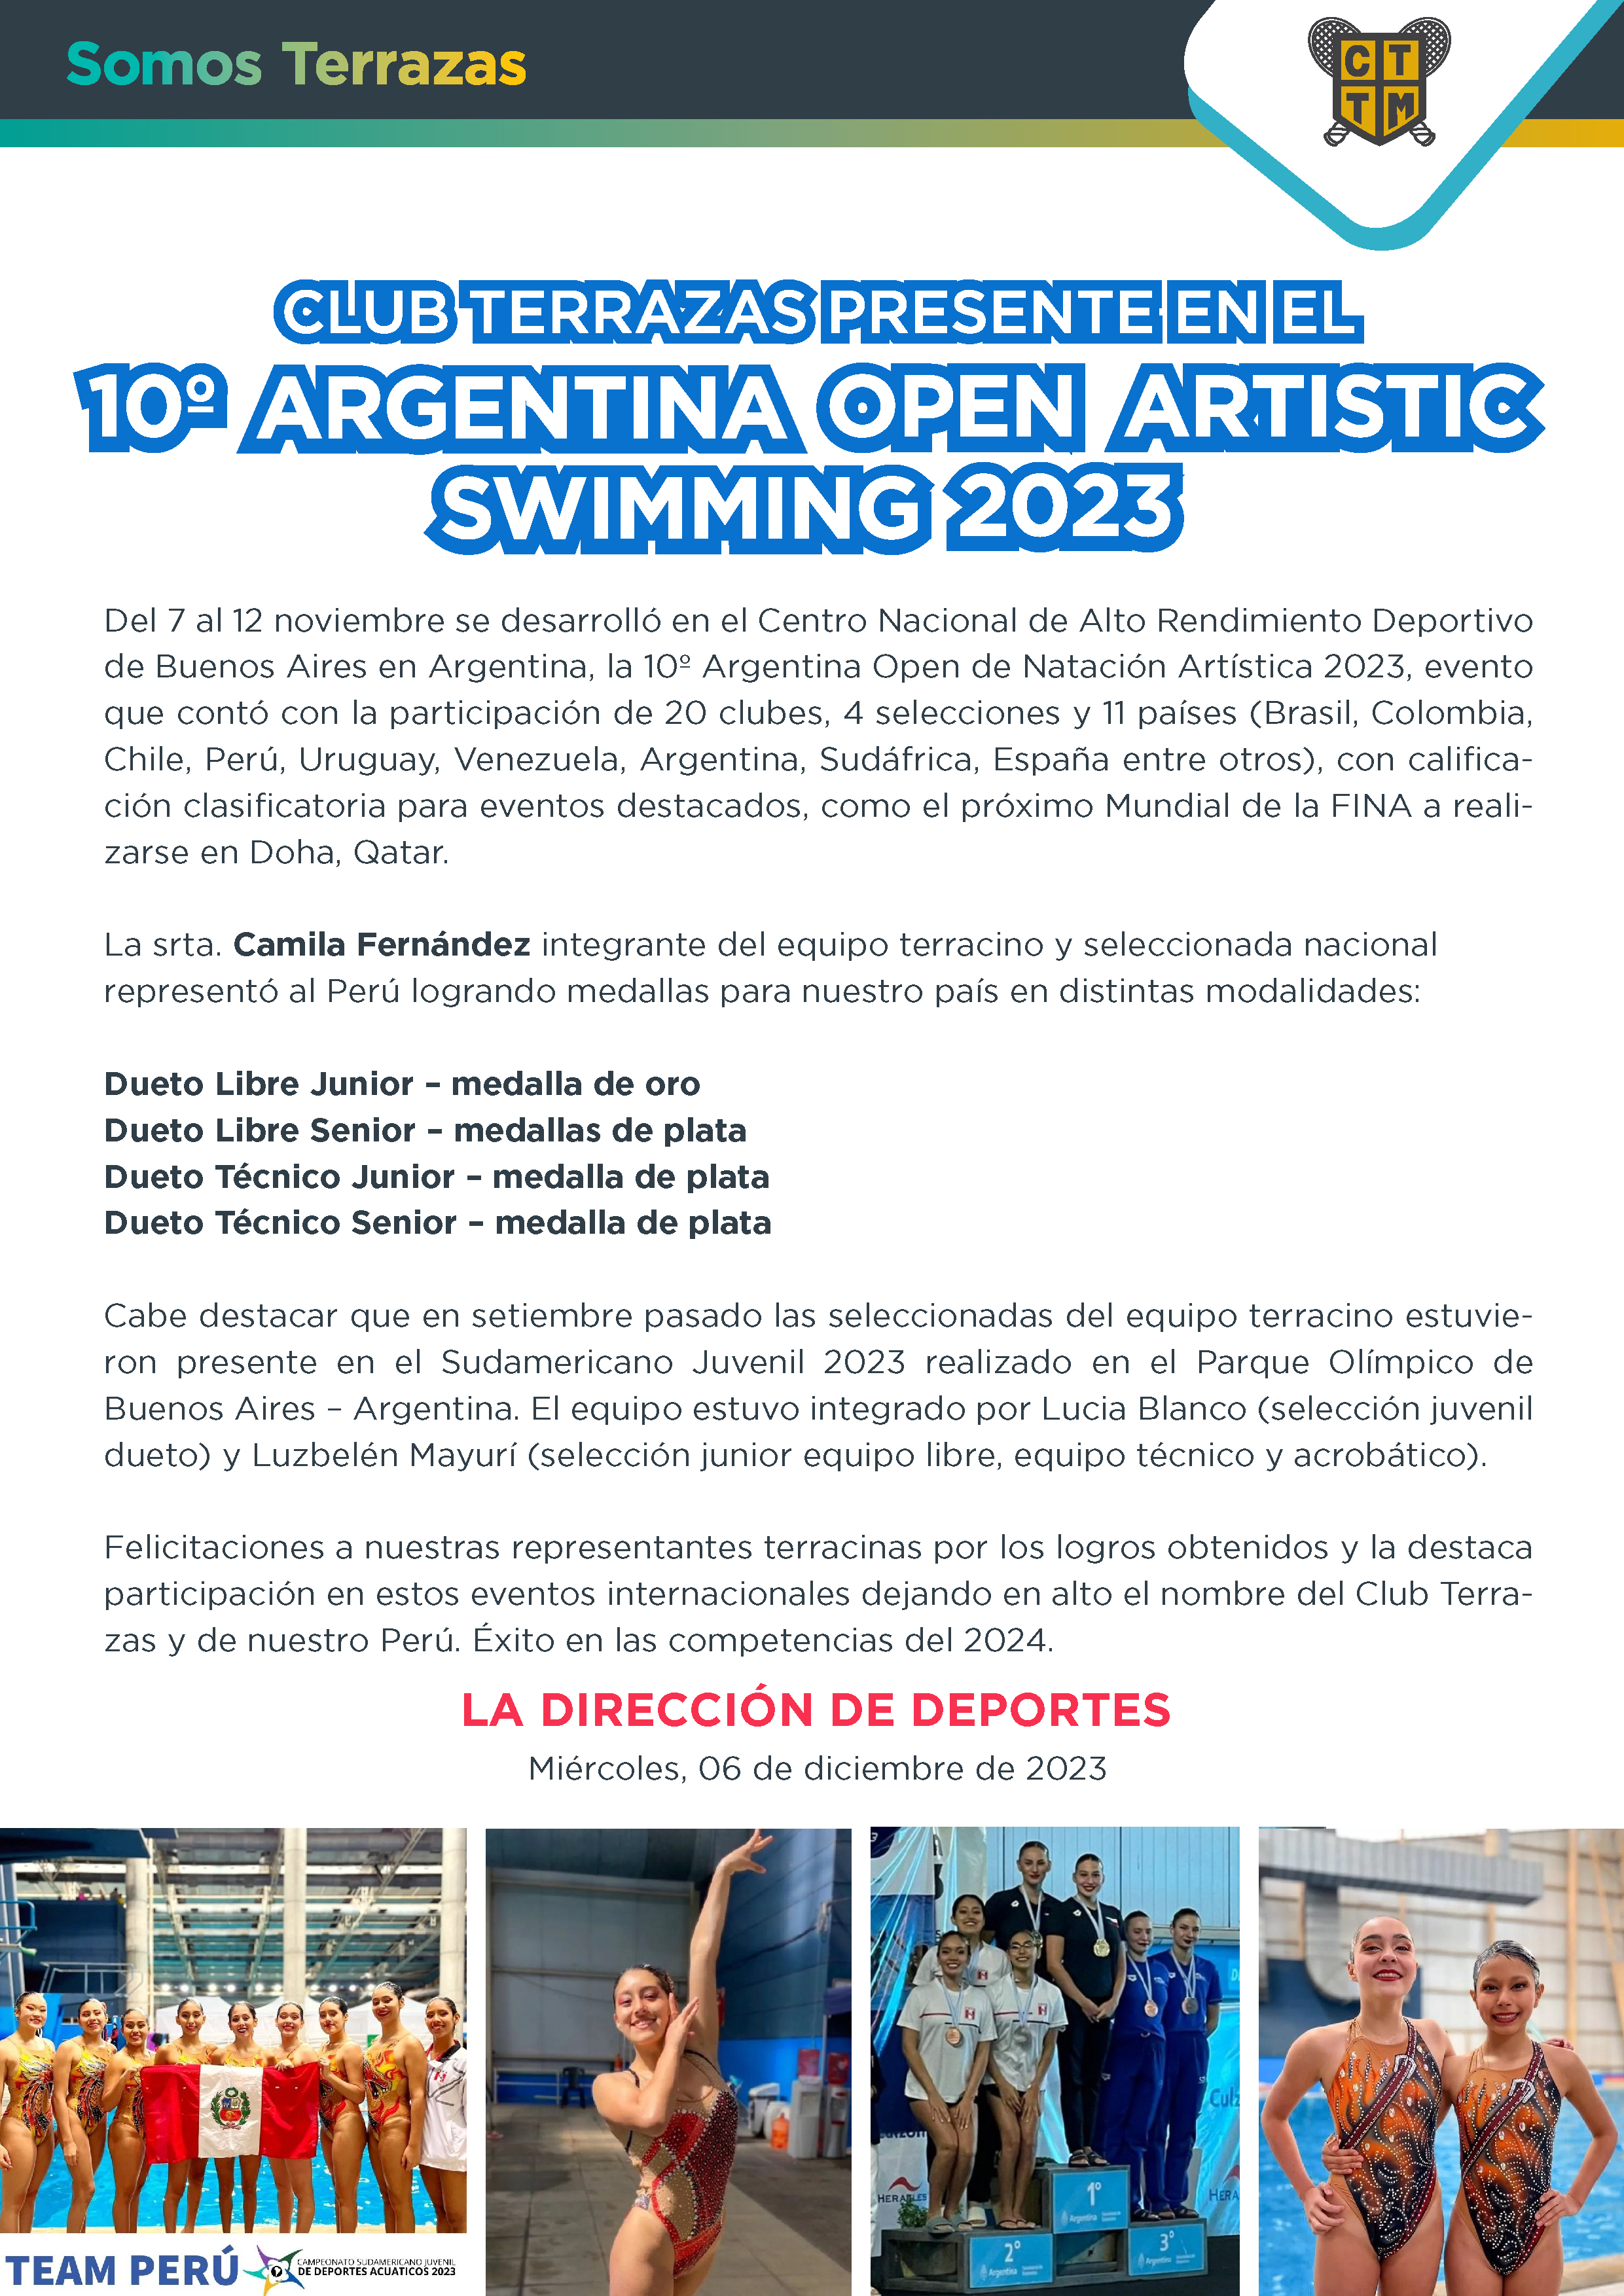 CLUB TERRAZAS PRESENTE EN EL 10º ARGENTINA OPEN ARTISTIC SWIMMING 2023